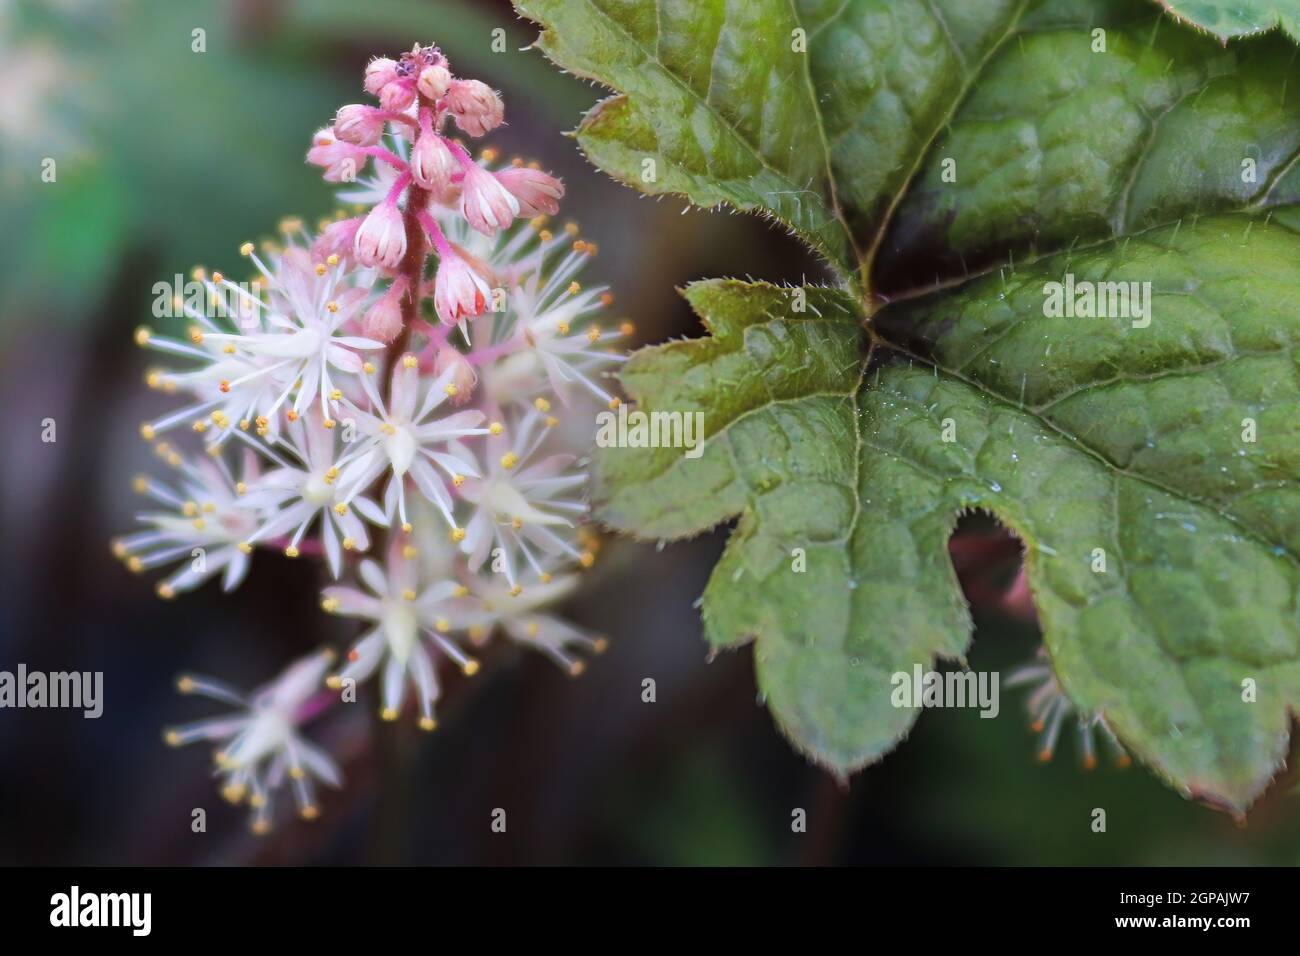 Delicate foam flower blooms inbetween plant leaves. Stock Photo